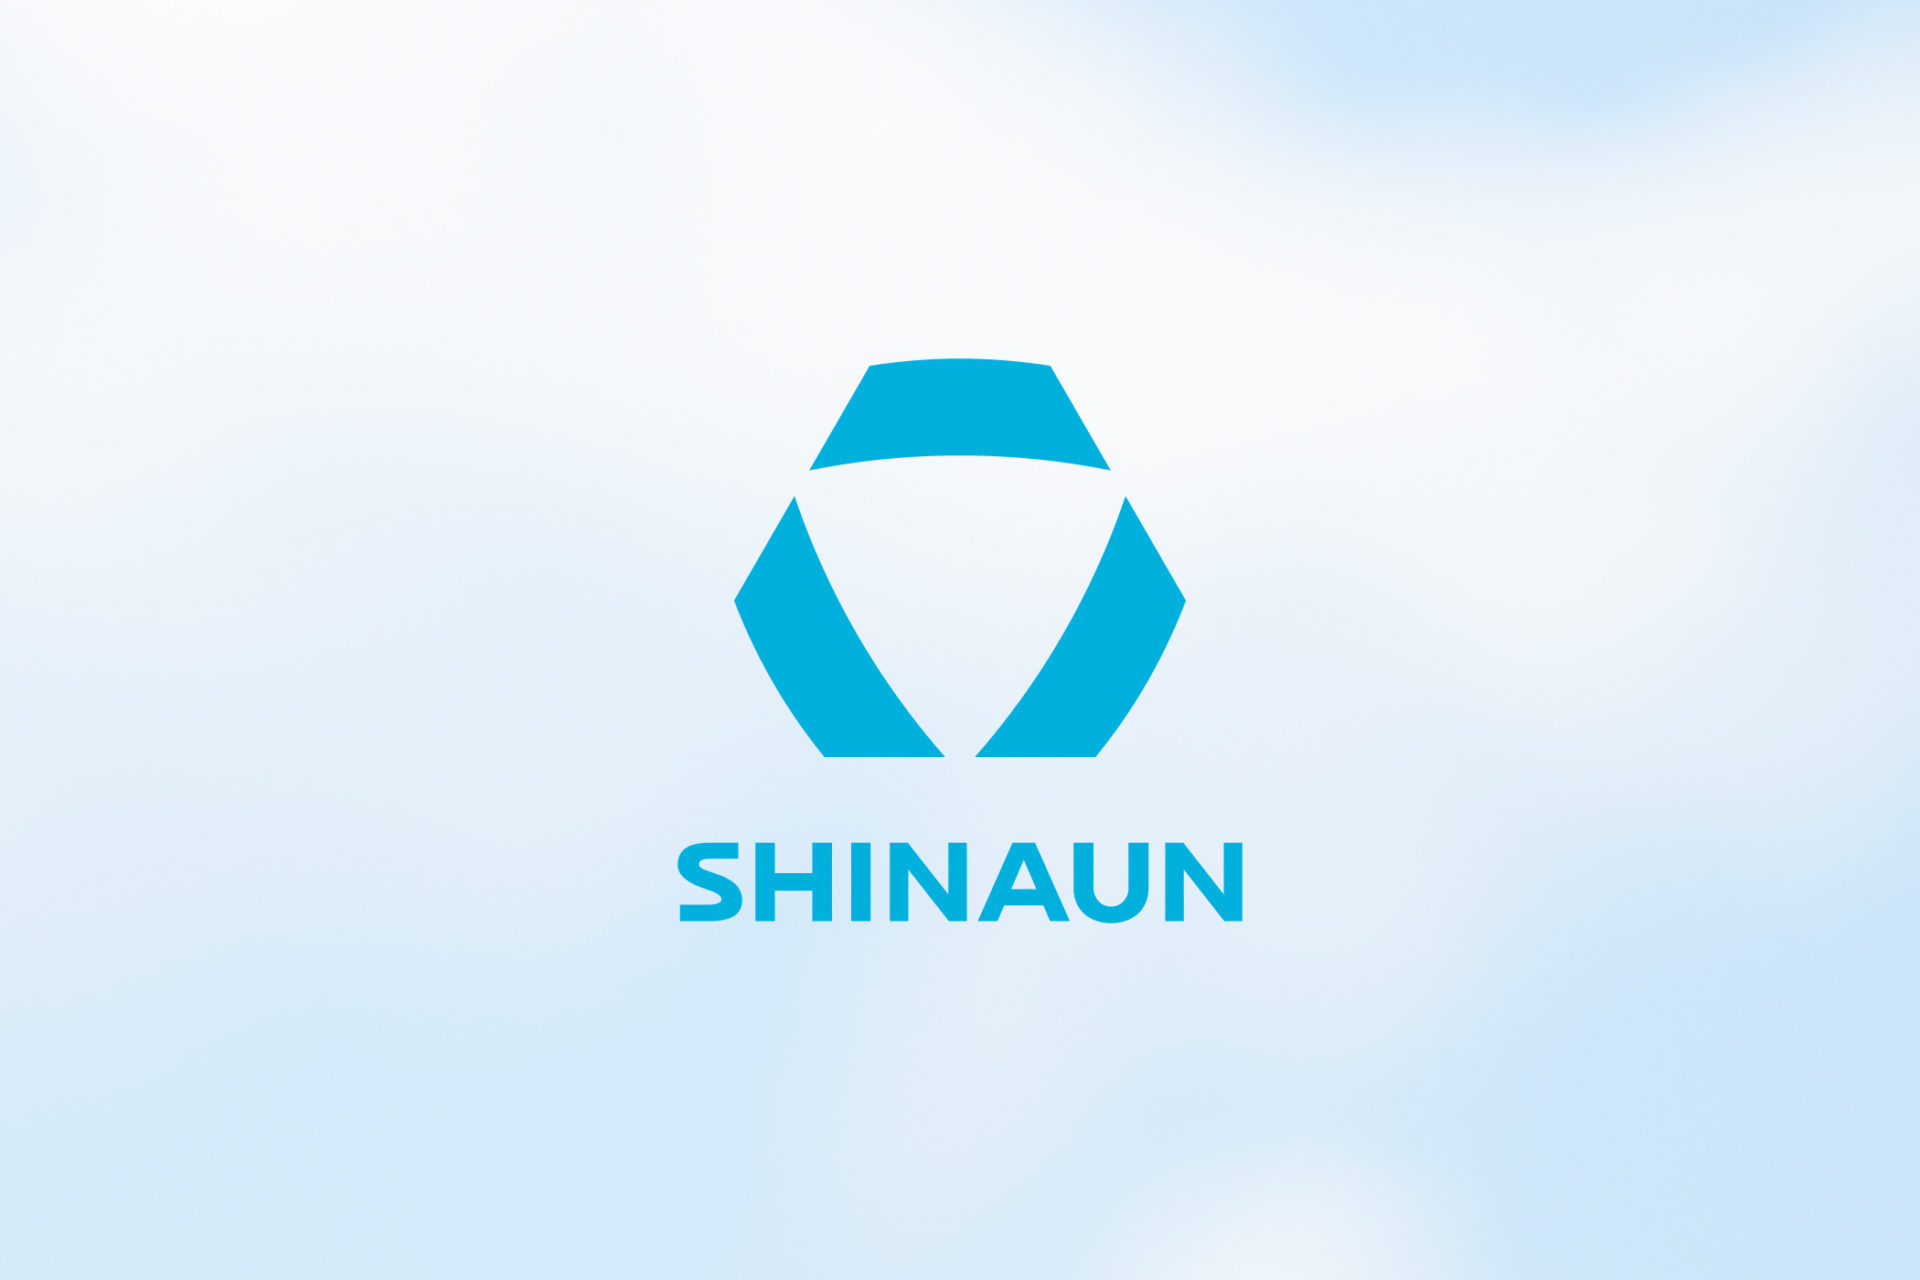 SHINAUN